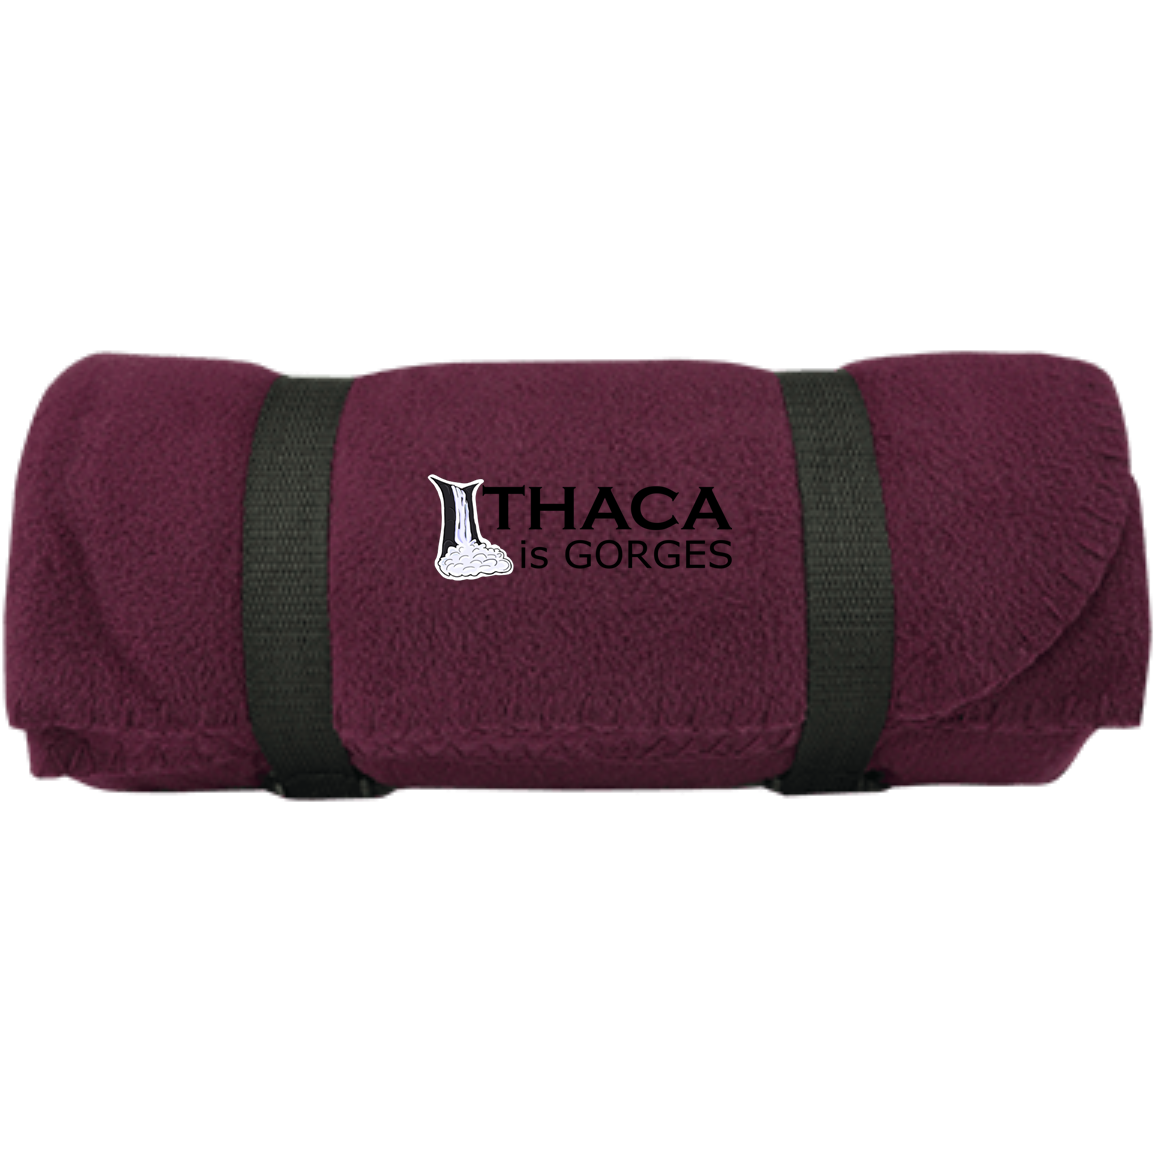 Ithaca is Gorges Regular Fleece Blanket (Color Graphic)